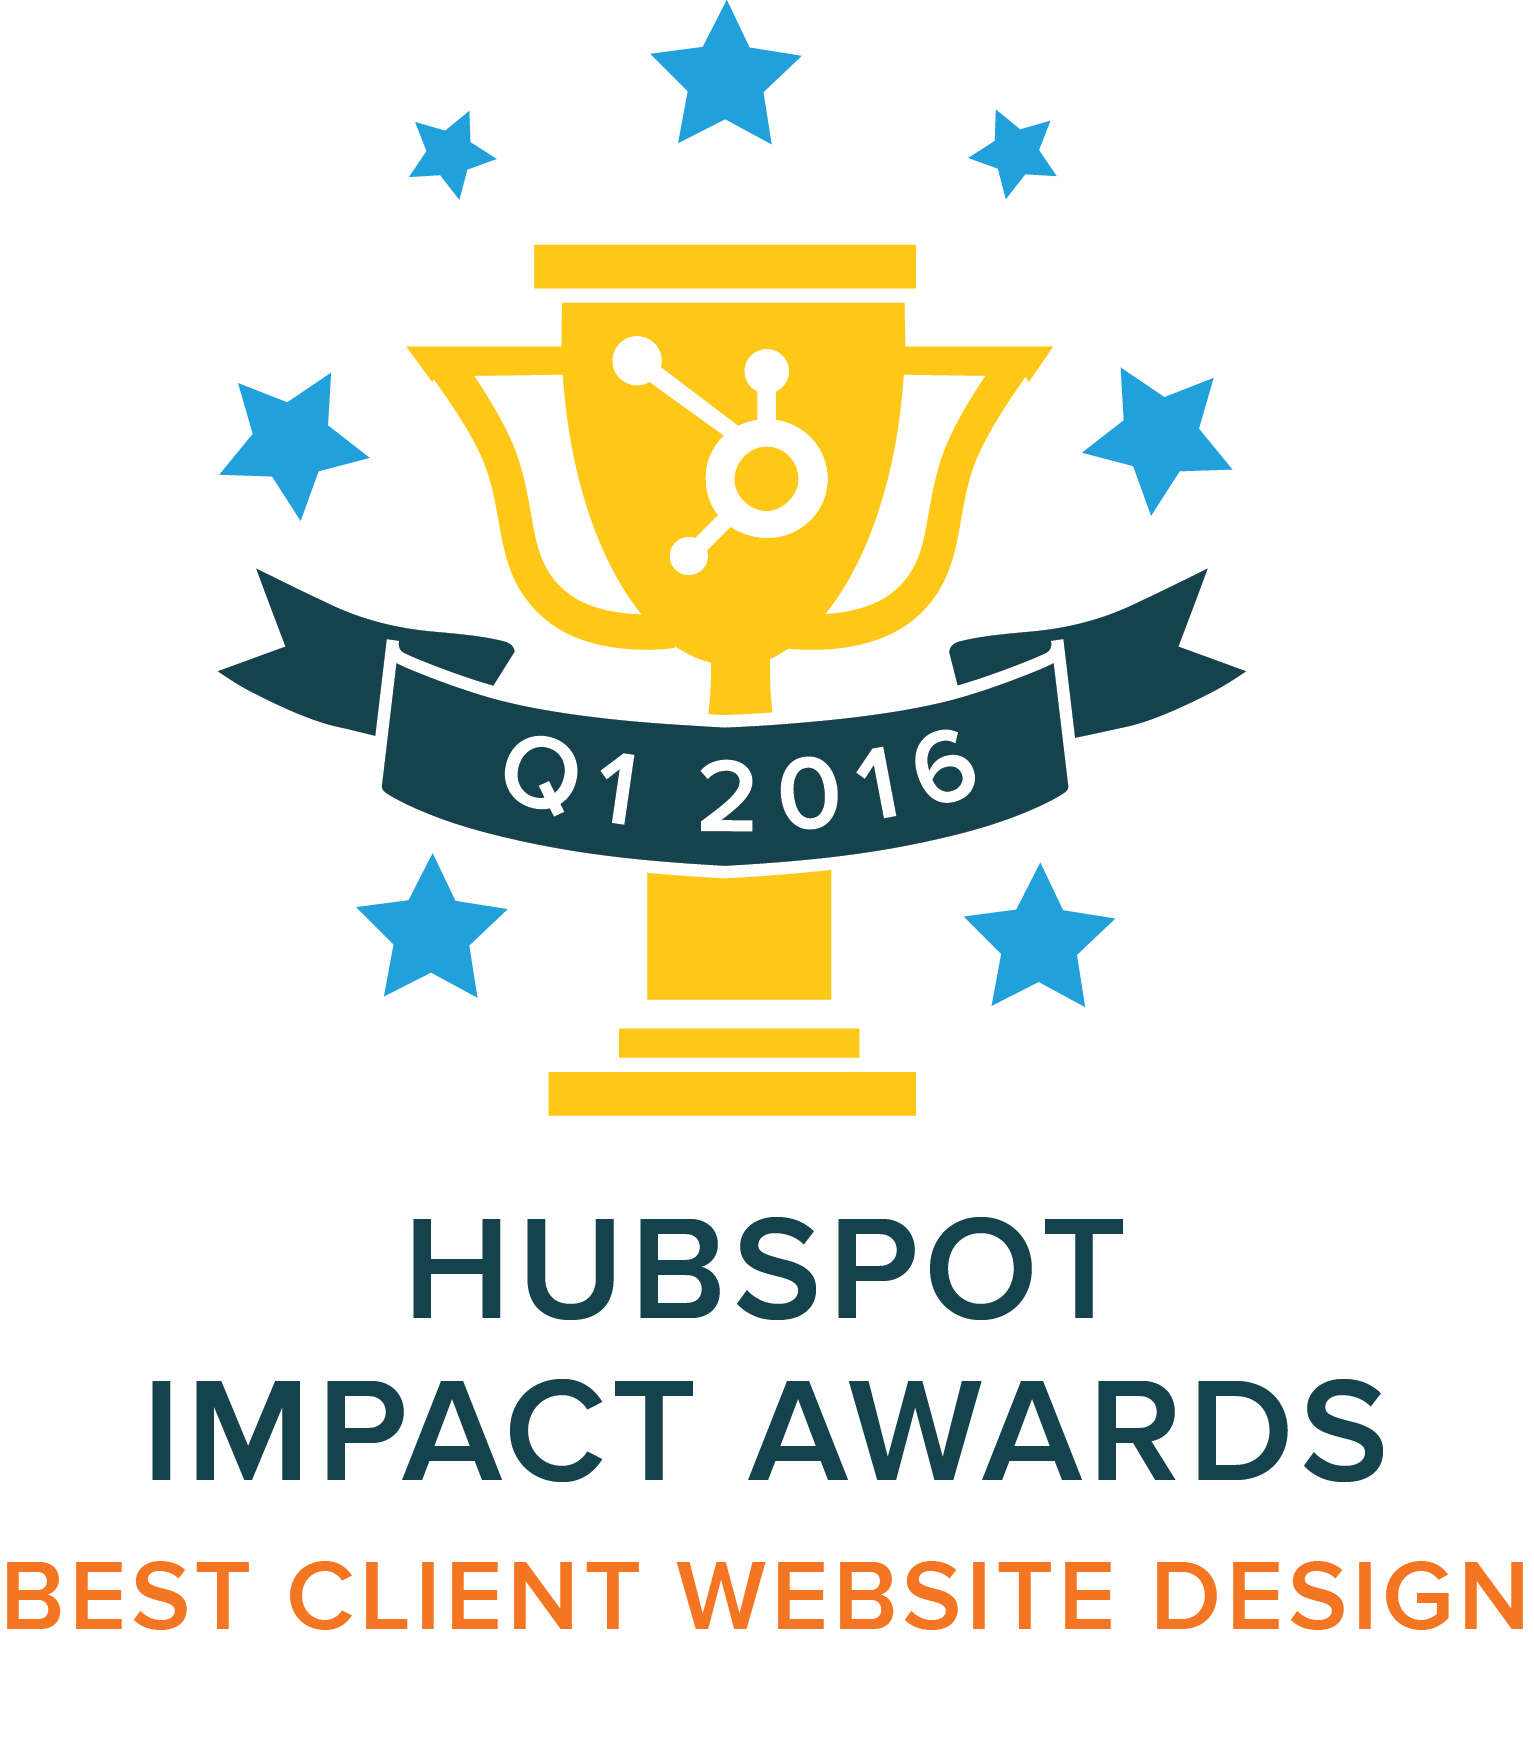 Stream Creative Receives HubSpot Impact Award For Best Client Website